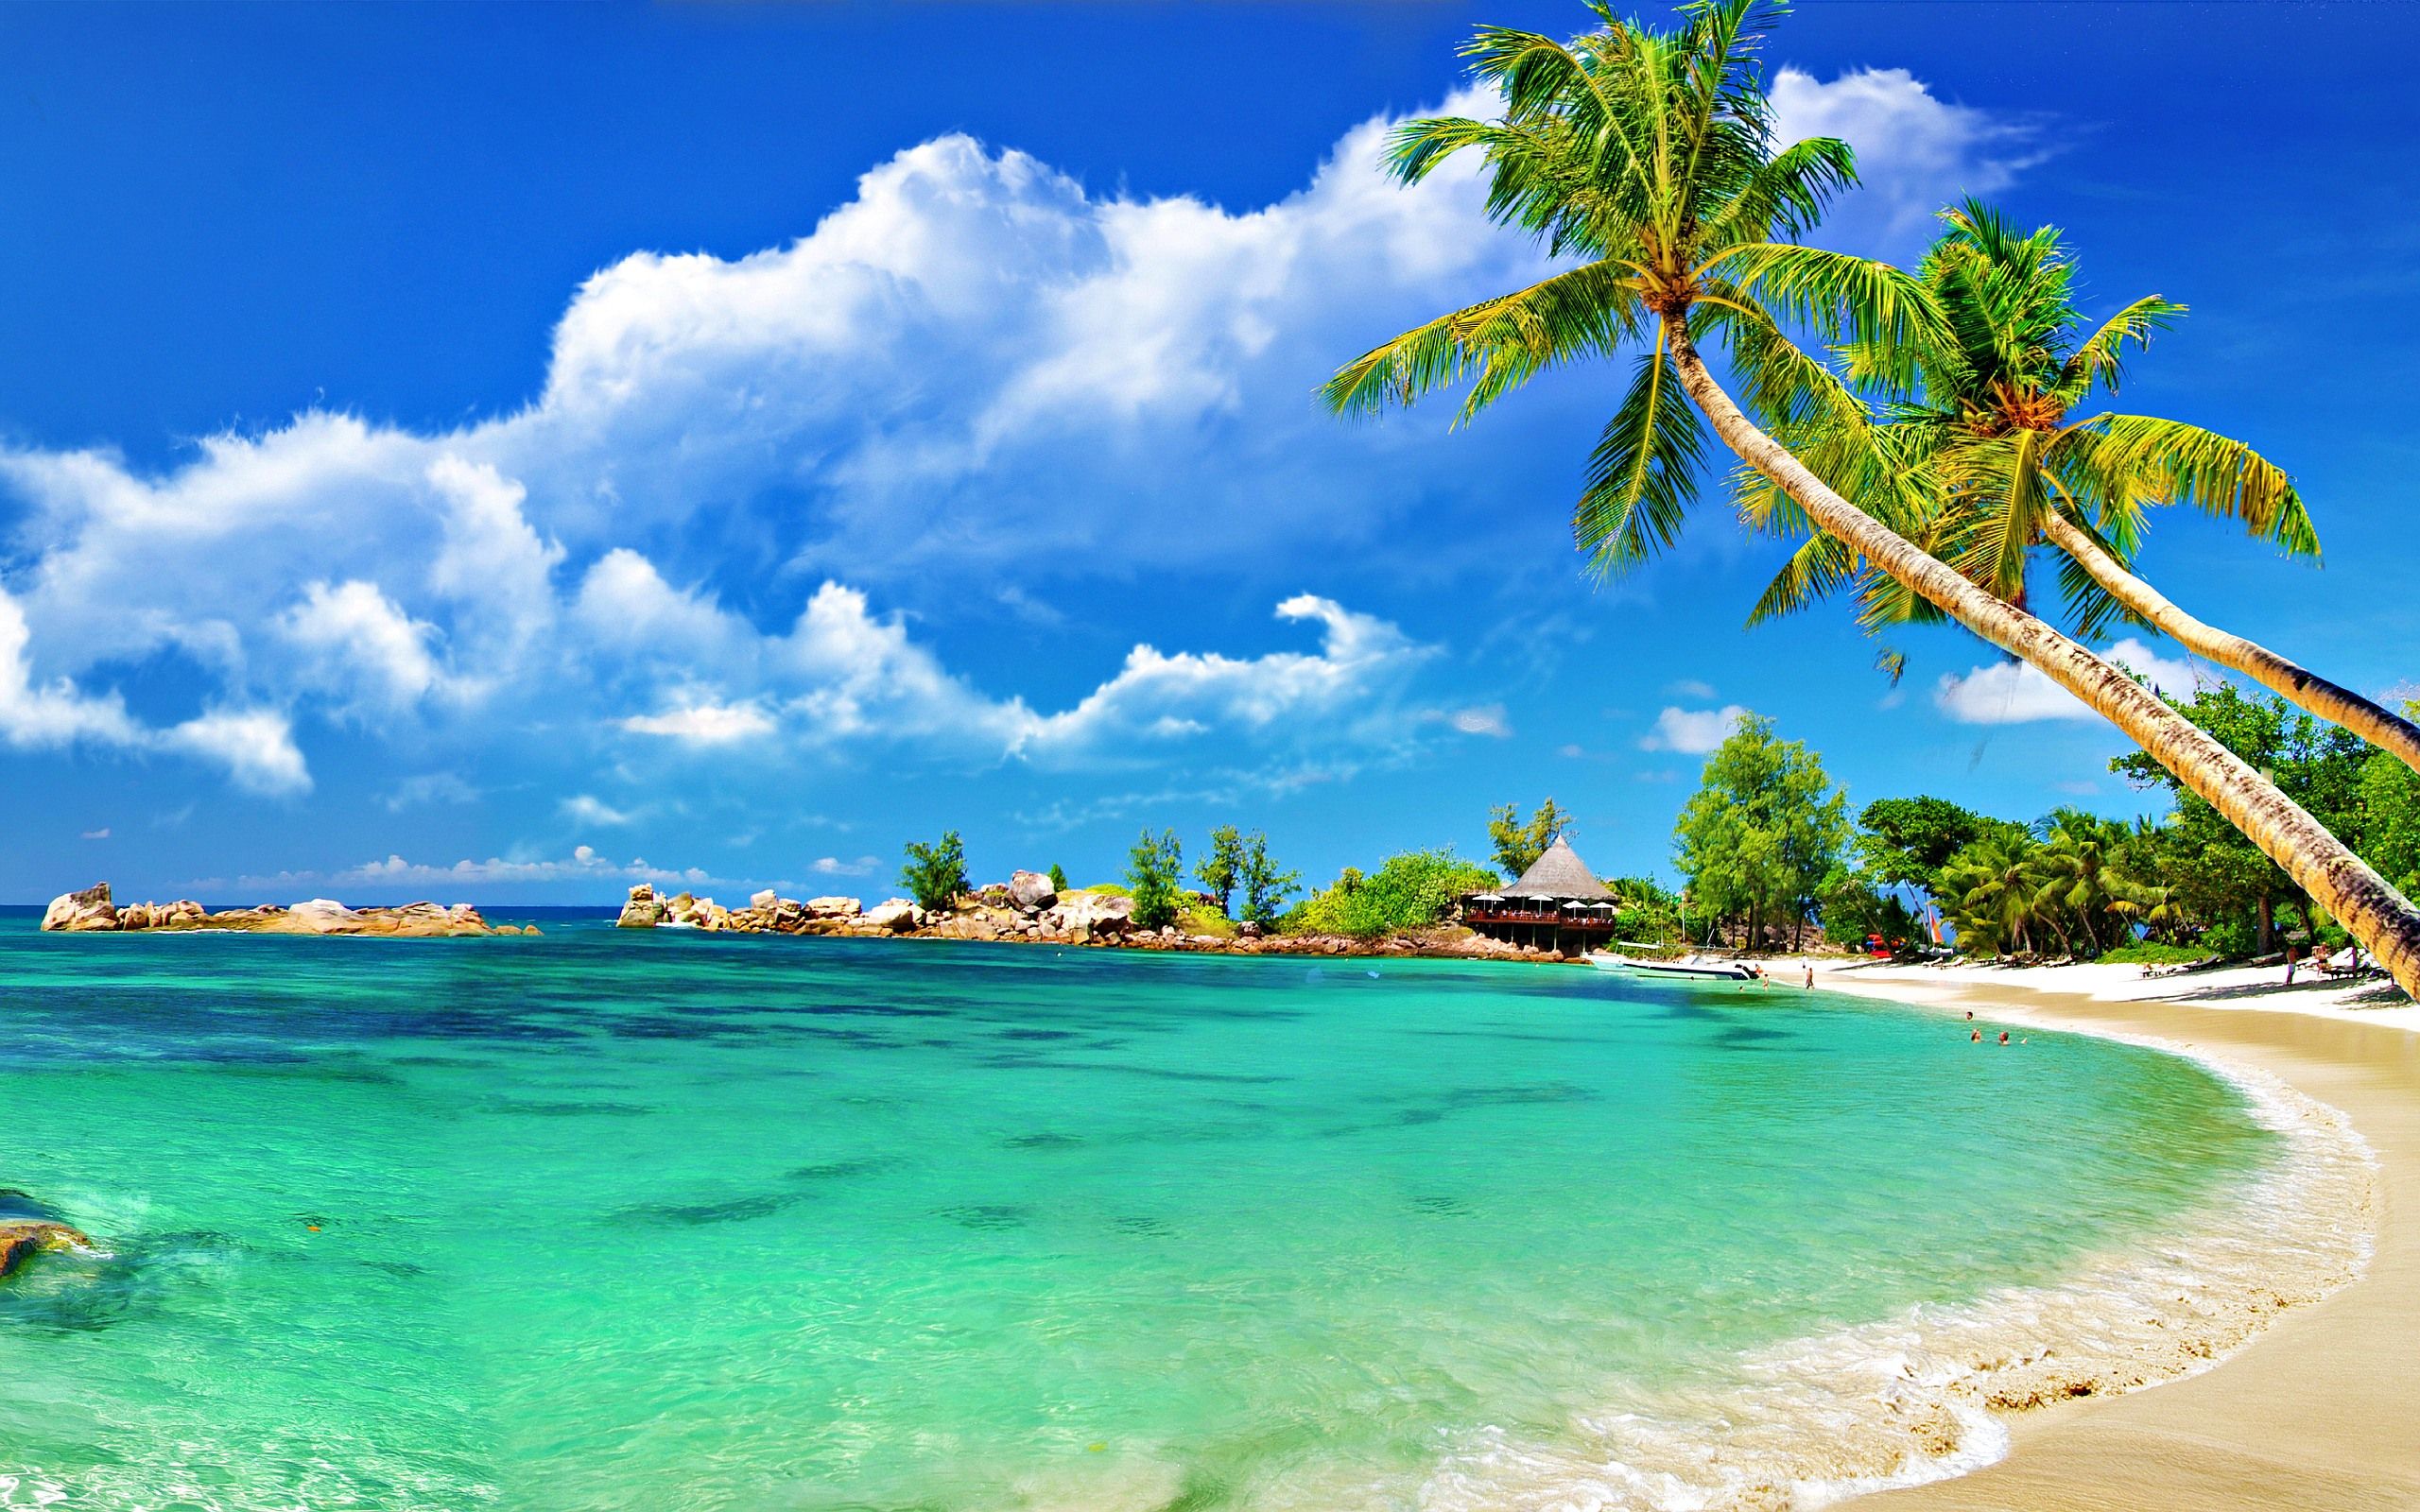 Để làm mới màn hình desktop của bạn, hãy xem bức hình với khung cảnh thiên nhiên tuyệt đẹp của bãi biển, nơi sóng vỗ và gió thổi mang lại sự yên bình và thư thái cho tiềm thức của bạn.